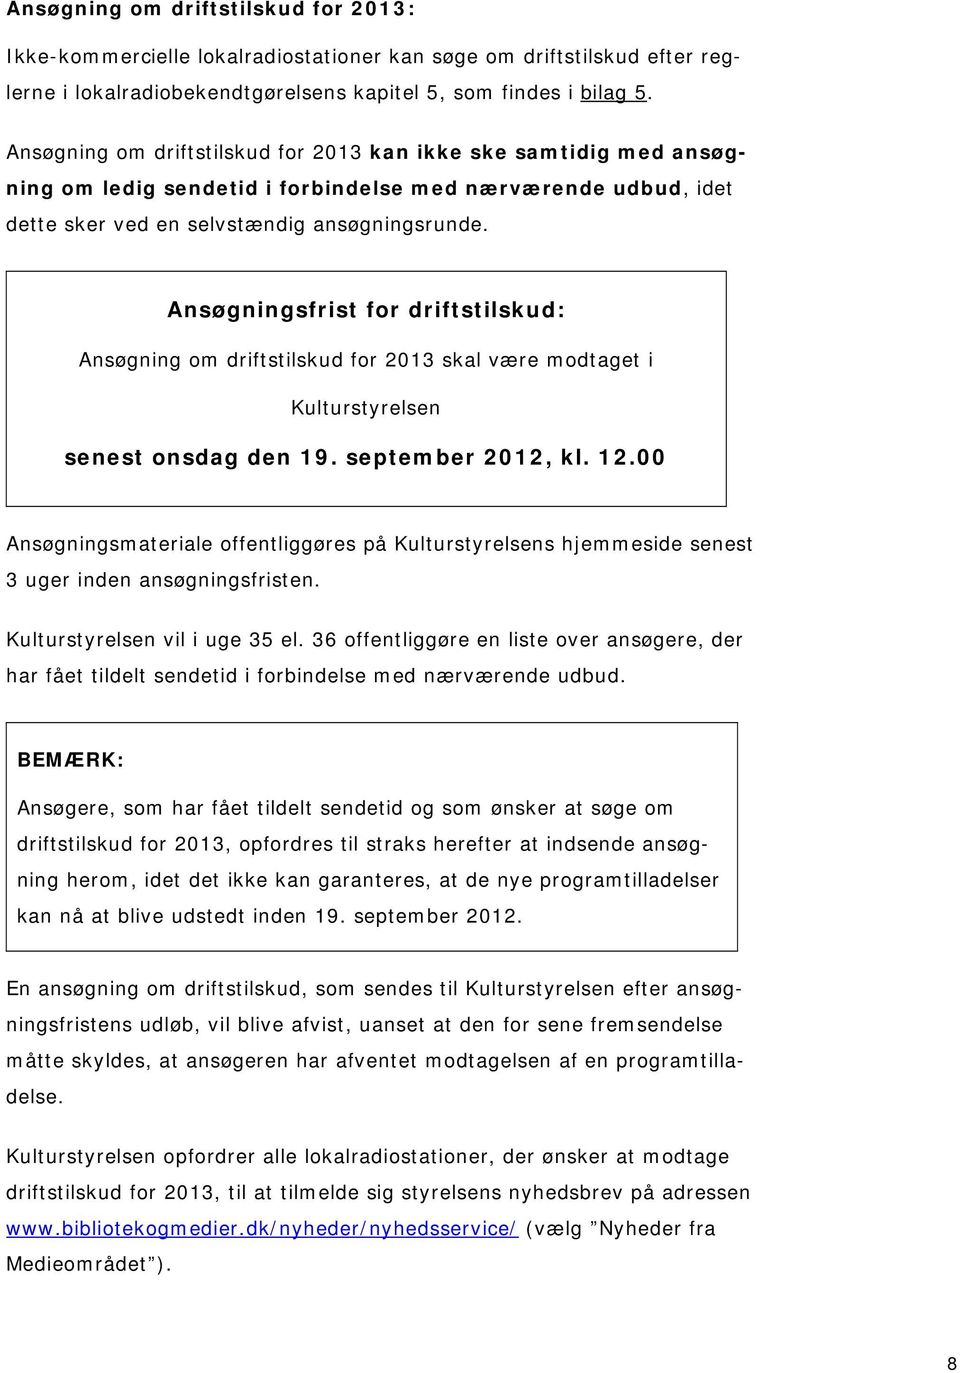 Ansøgningsfrist for driftstilskud: Ansøgning om driftstilskud for 2013 skal være modtaget i Kulturstyrelsen senest onsdag den 19. september 2012, kl. 12.